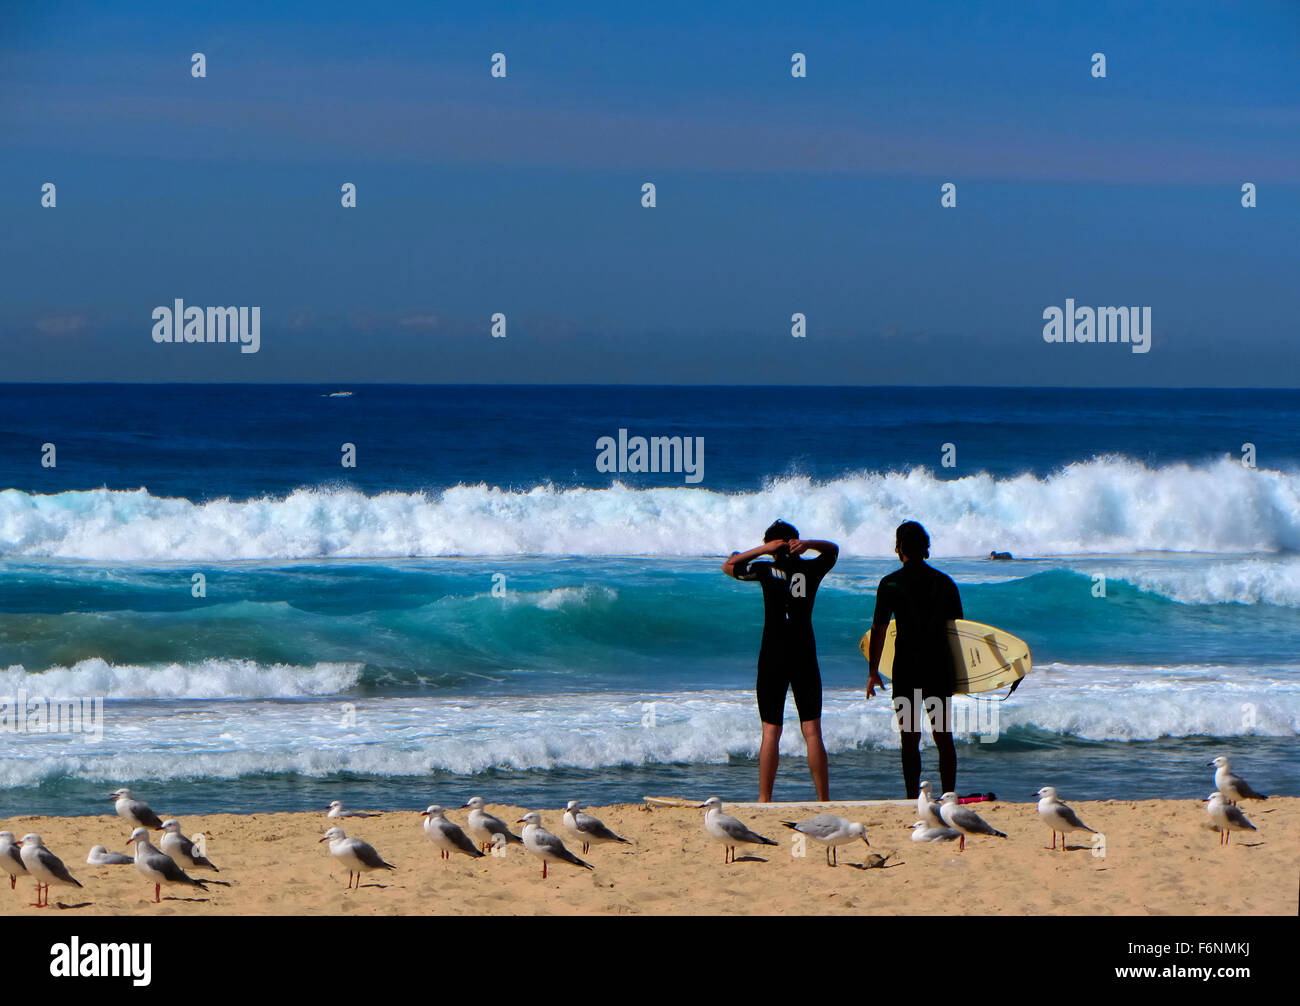 Maroubra Beach, near Sydney NSW Australia Stock Photo